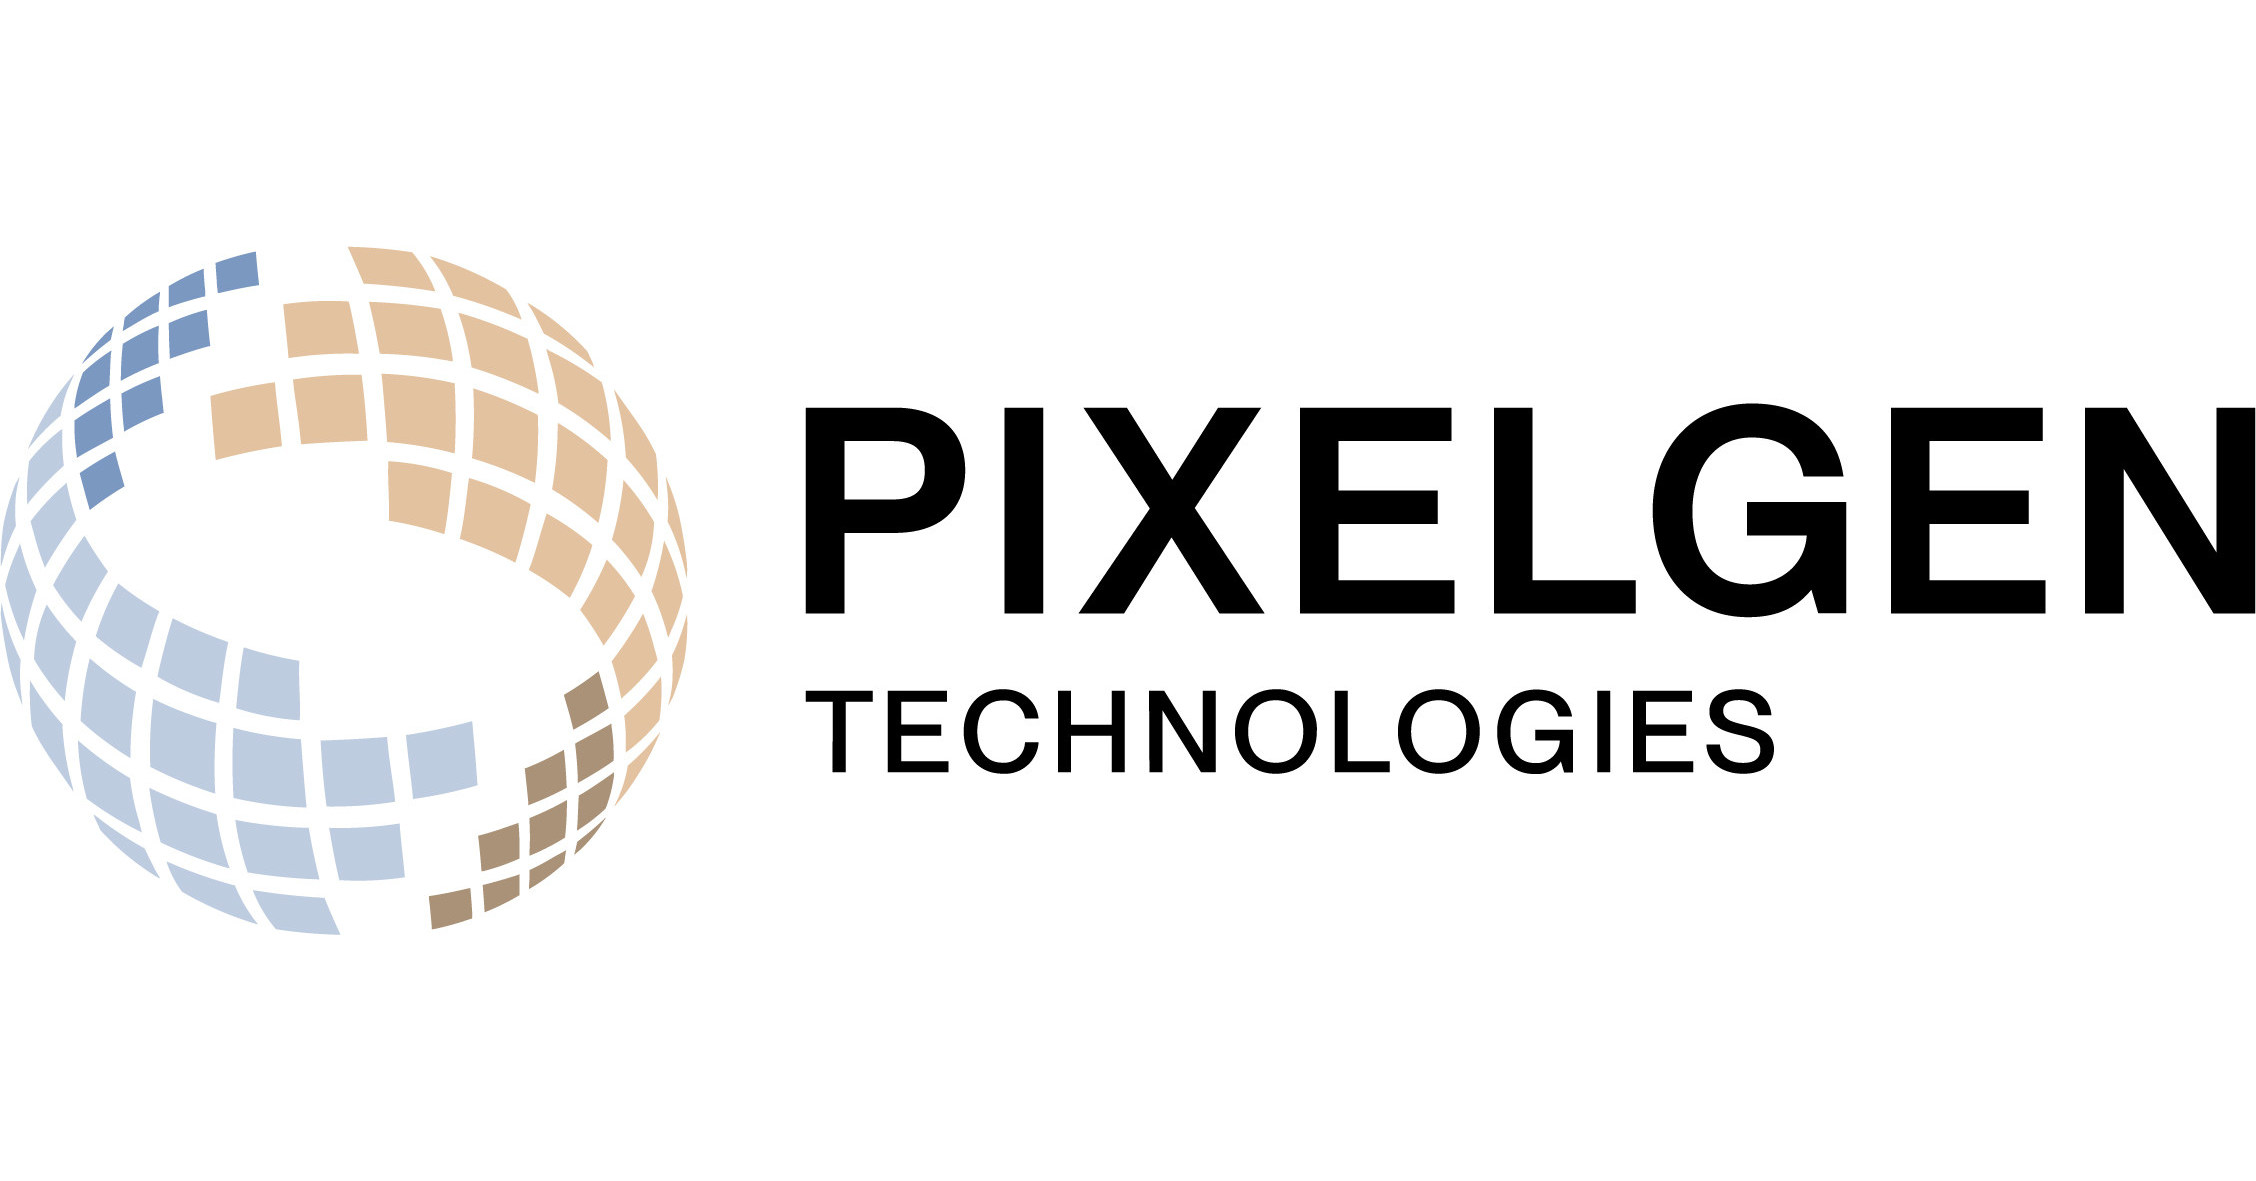 Pixelgen Technologies